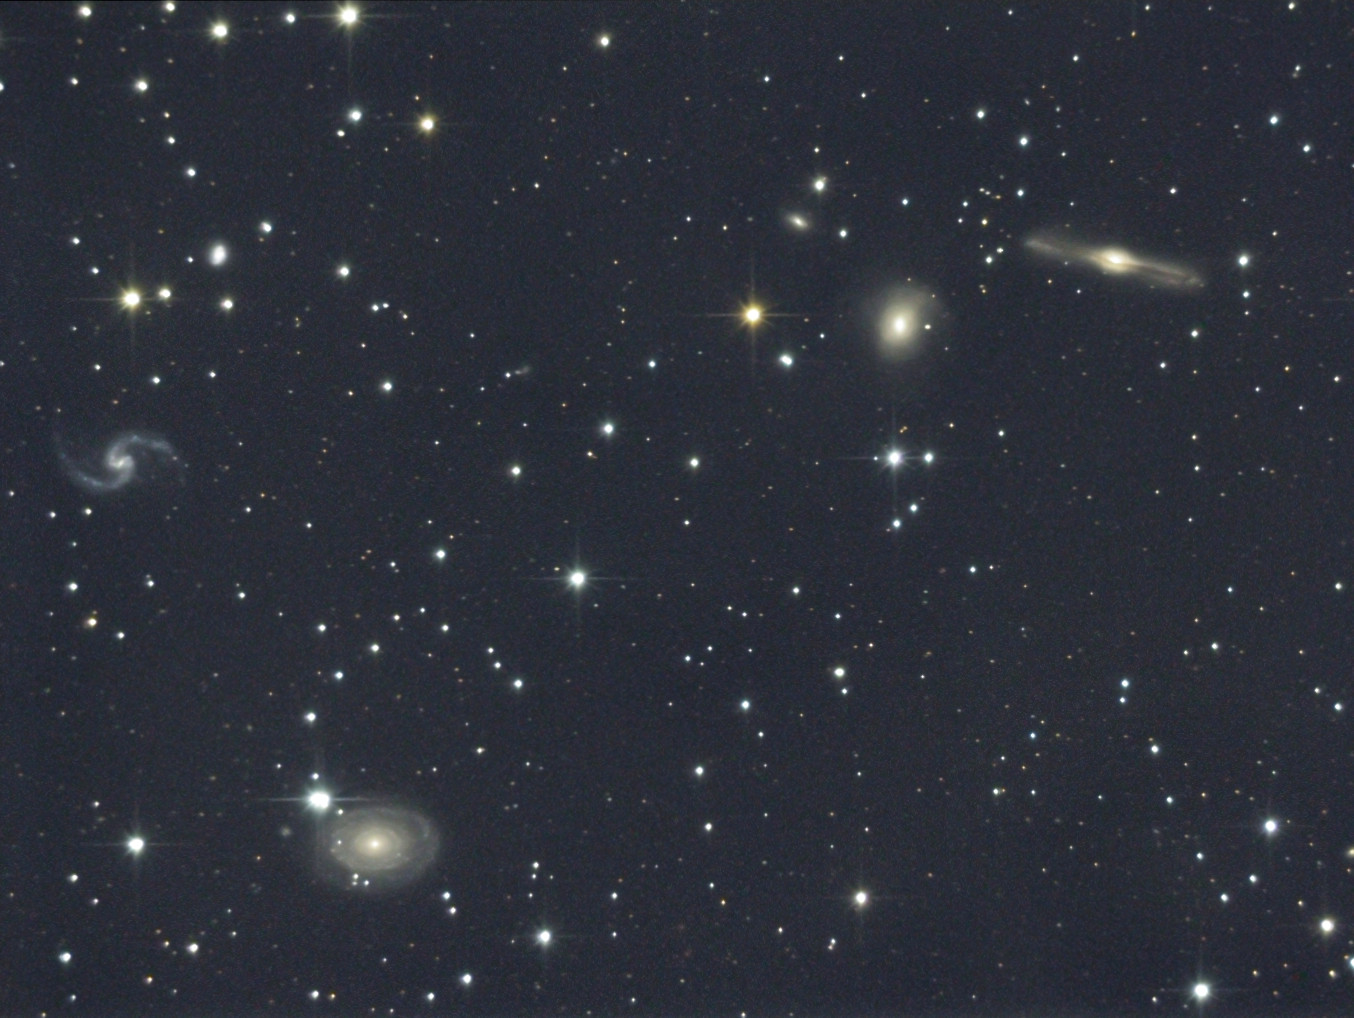 NGC 678